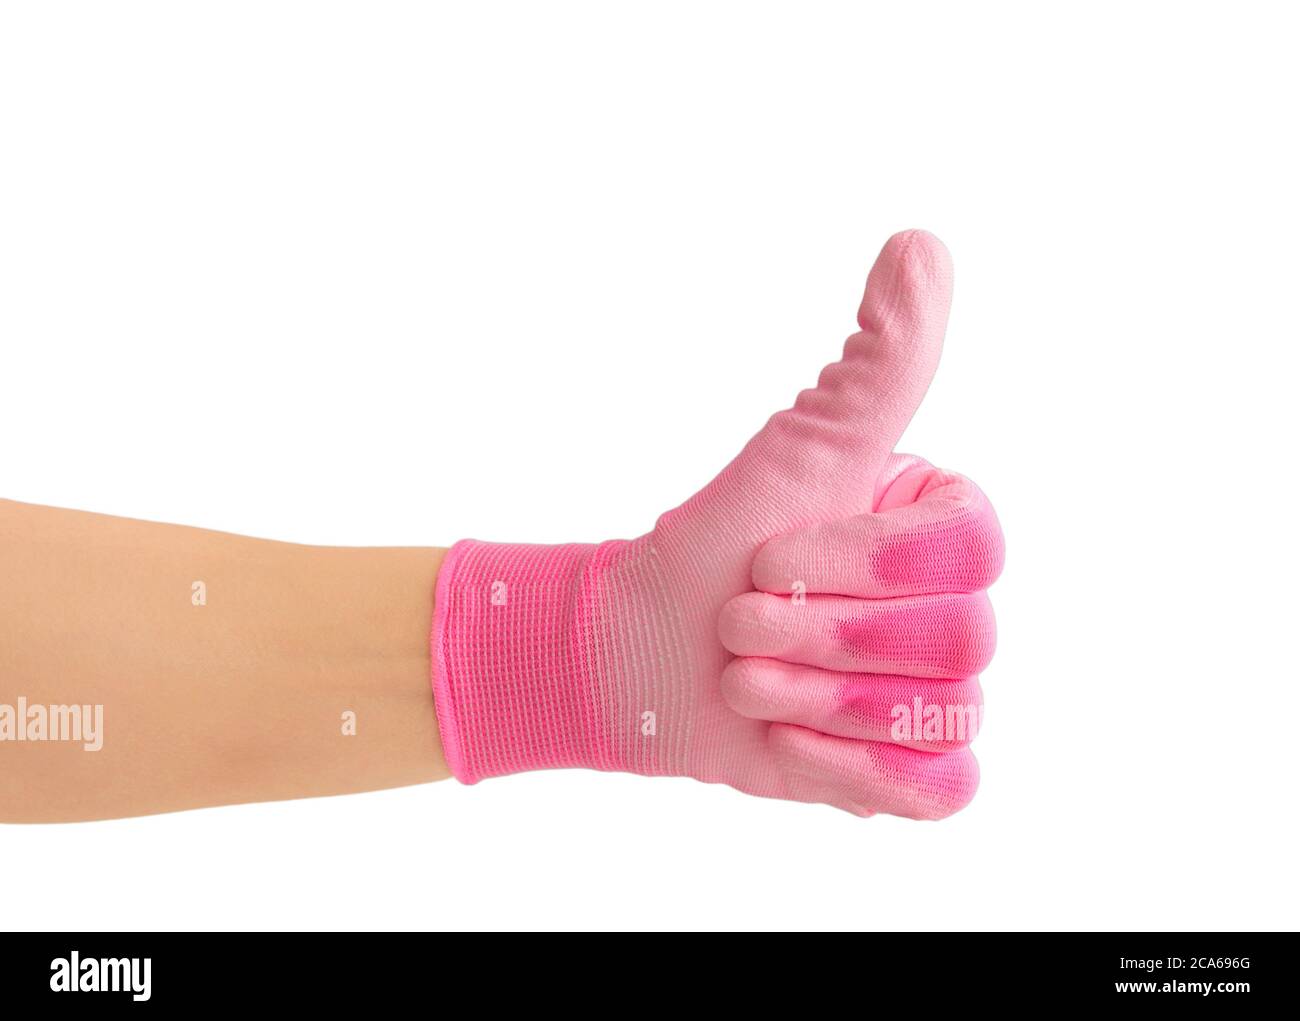 Vista ravvicinata della mano della persona che indossa un guanto da giardinaggio rosa di colore vivace e mostra il pollice come un gesto. Isolato su sfondo bianco. Foto Stock